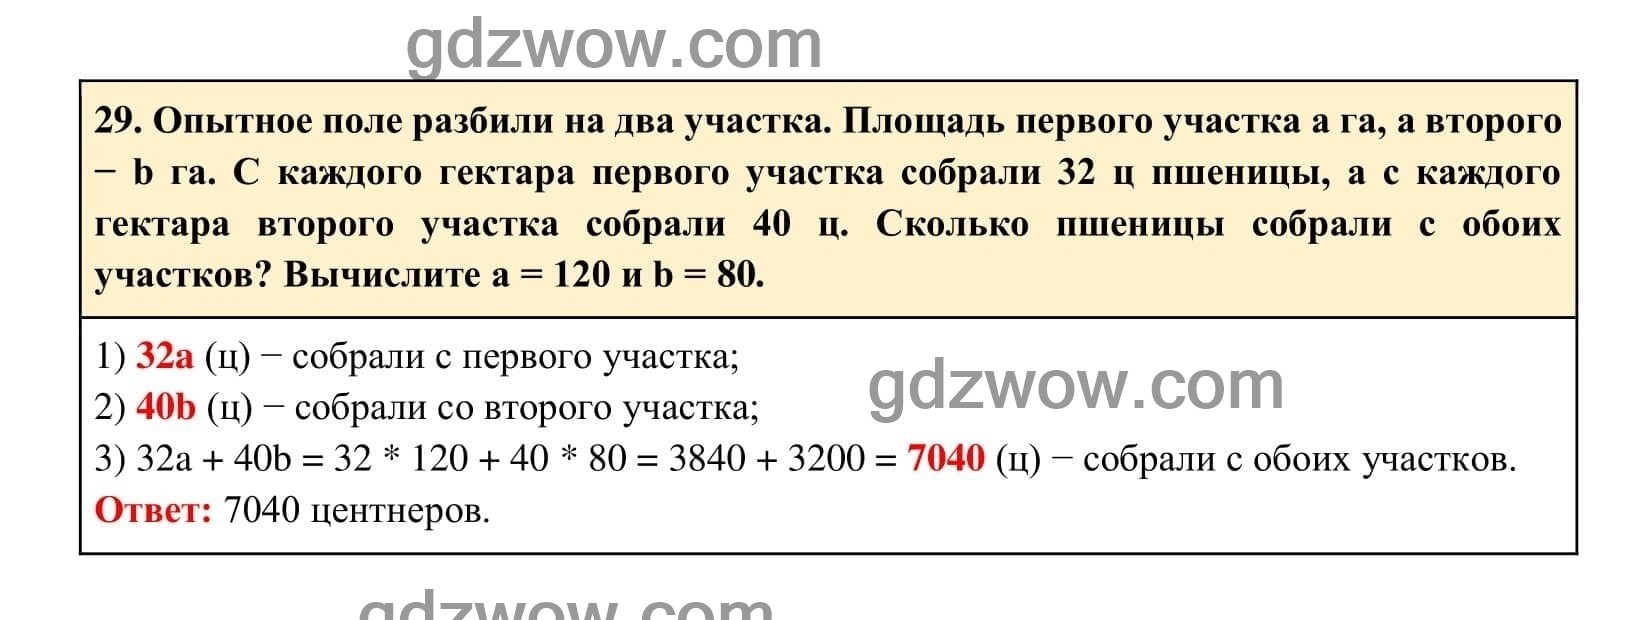 Упражнение 29 - ГДЗ по Алгебре 7 класс Учебник Макарычев (решебник) - GDZwow